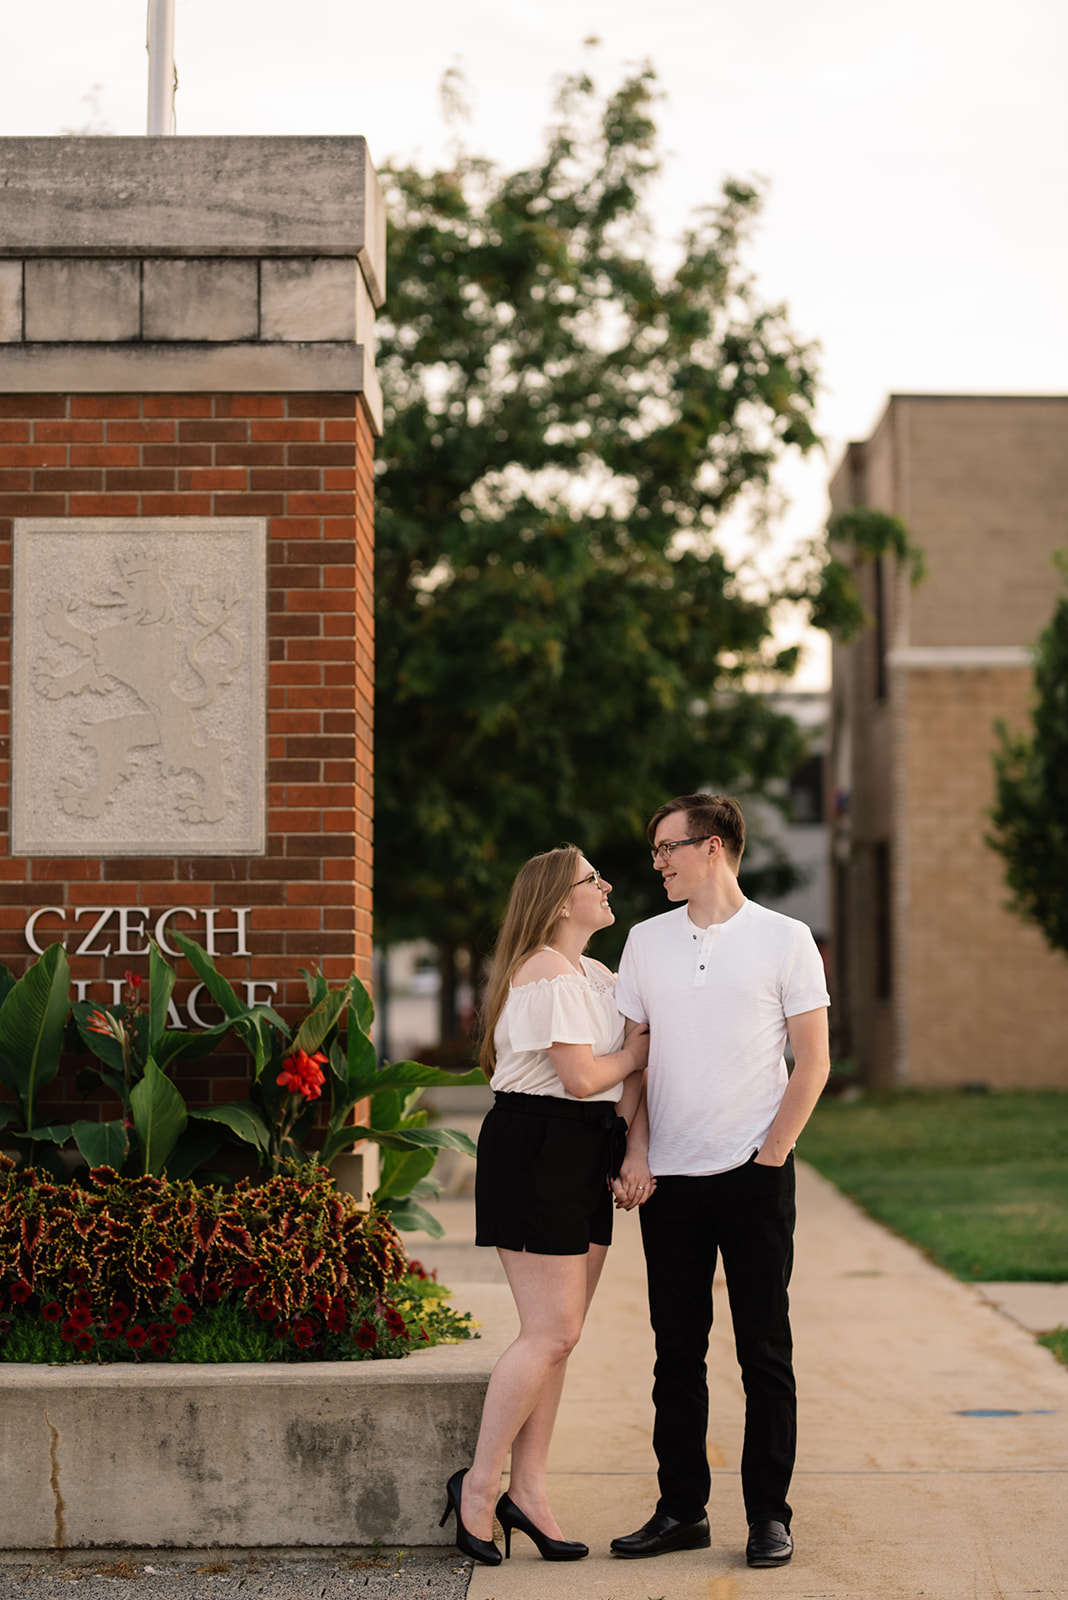 Czech Village Cedar Rapids Engagement and Wedding Photographers Sarah and Zach